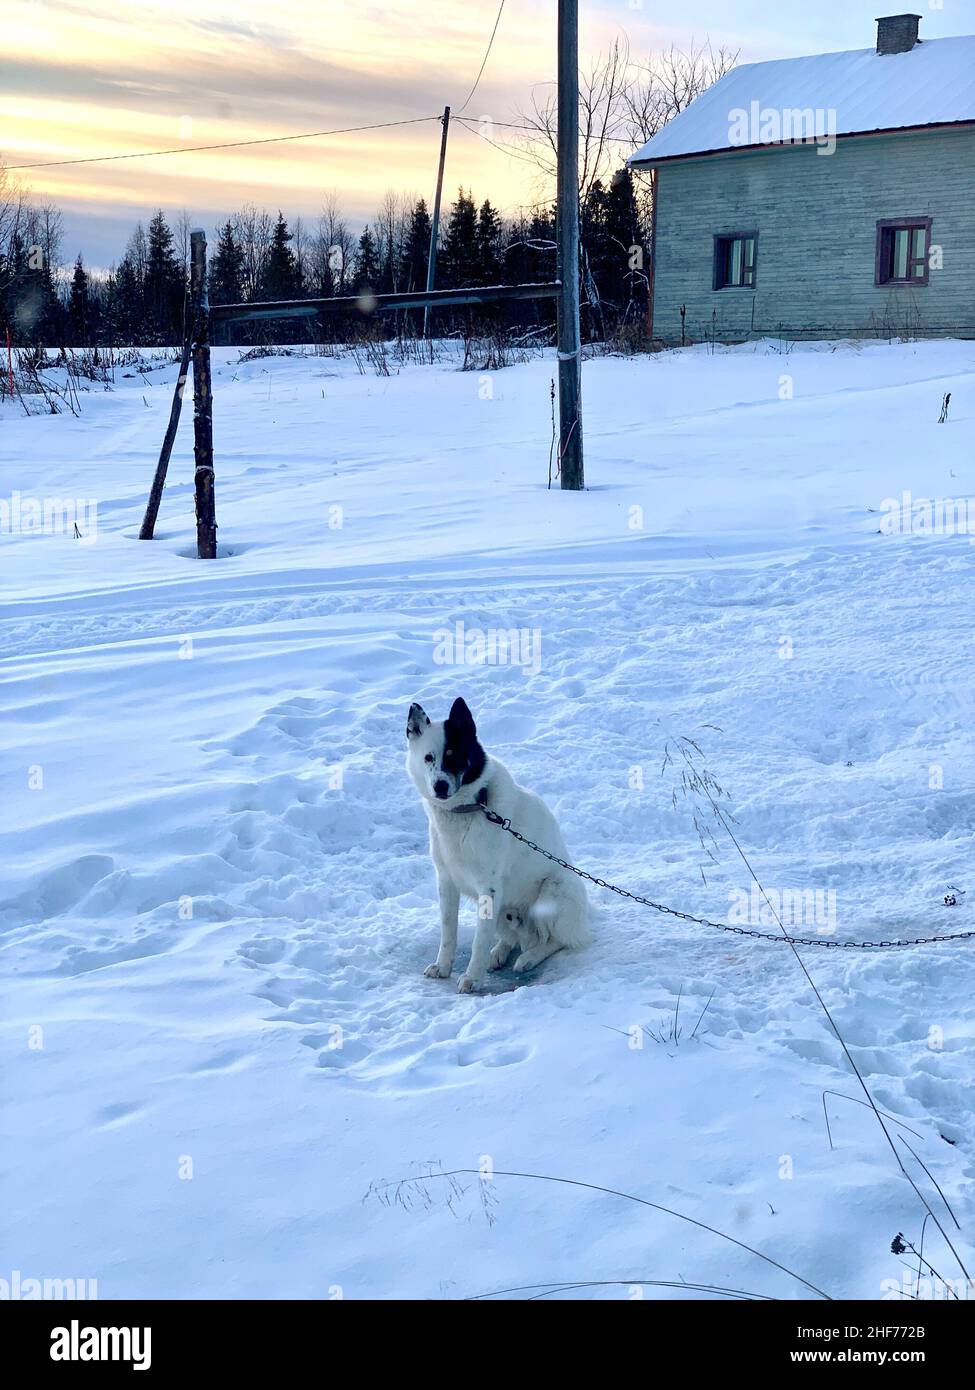 Finnland, Lappland, Raattama, ein Hund sitzt im Schnee Stockfotografie -  Alamy